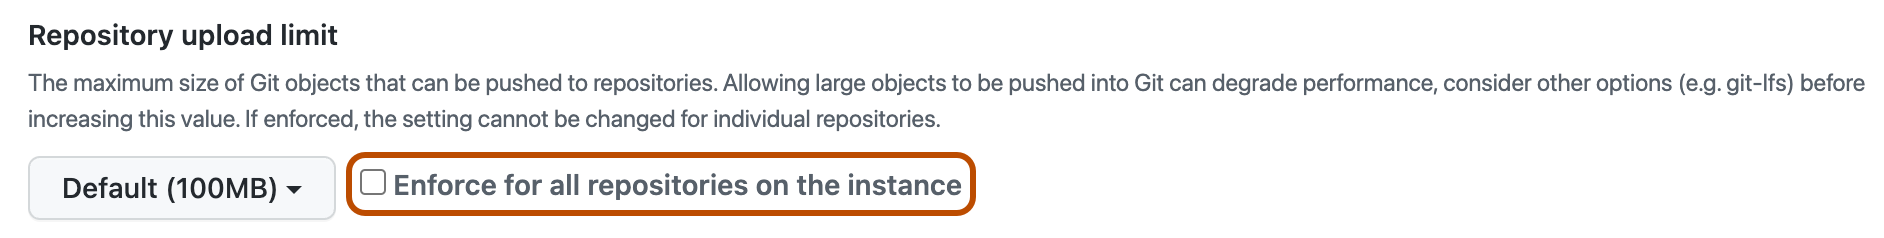 Captura de tela da seção de política "Limite de upload do repositório". A caixa de seleção "Impor em todos os repositórios" está realçada com um contorno laranja.